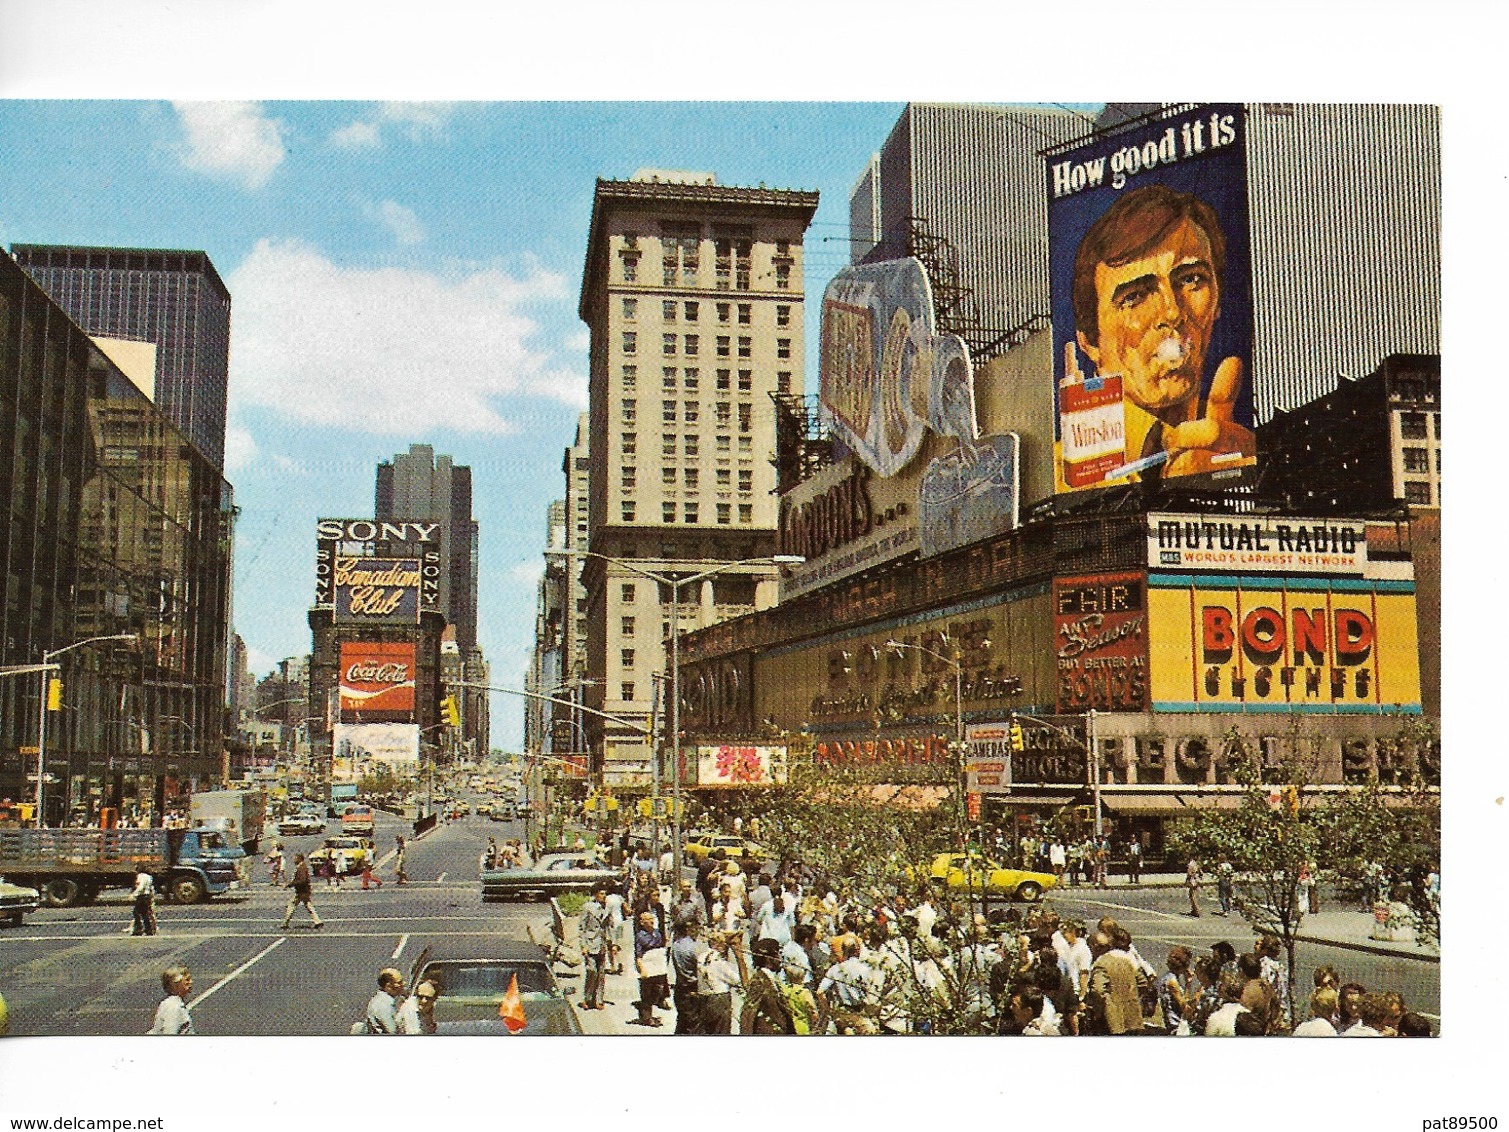 NEW YORK CITY/ Fameux TIME Square  / Petite CPA N° 616 NEUVE / TBE / - Time Square